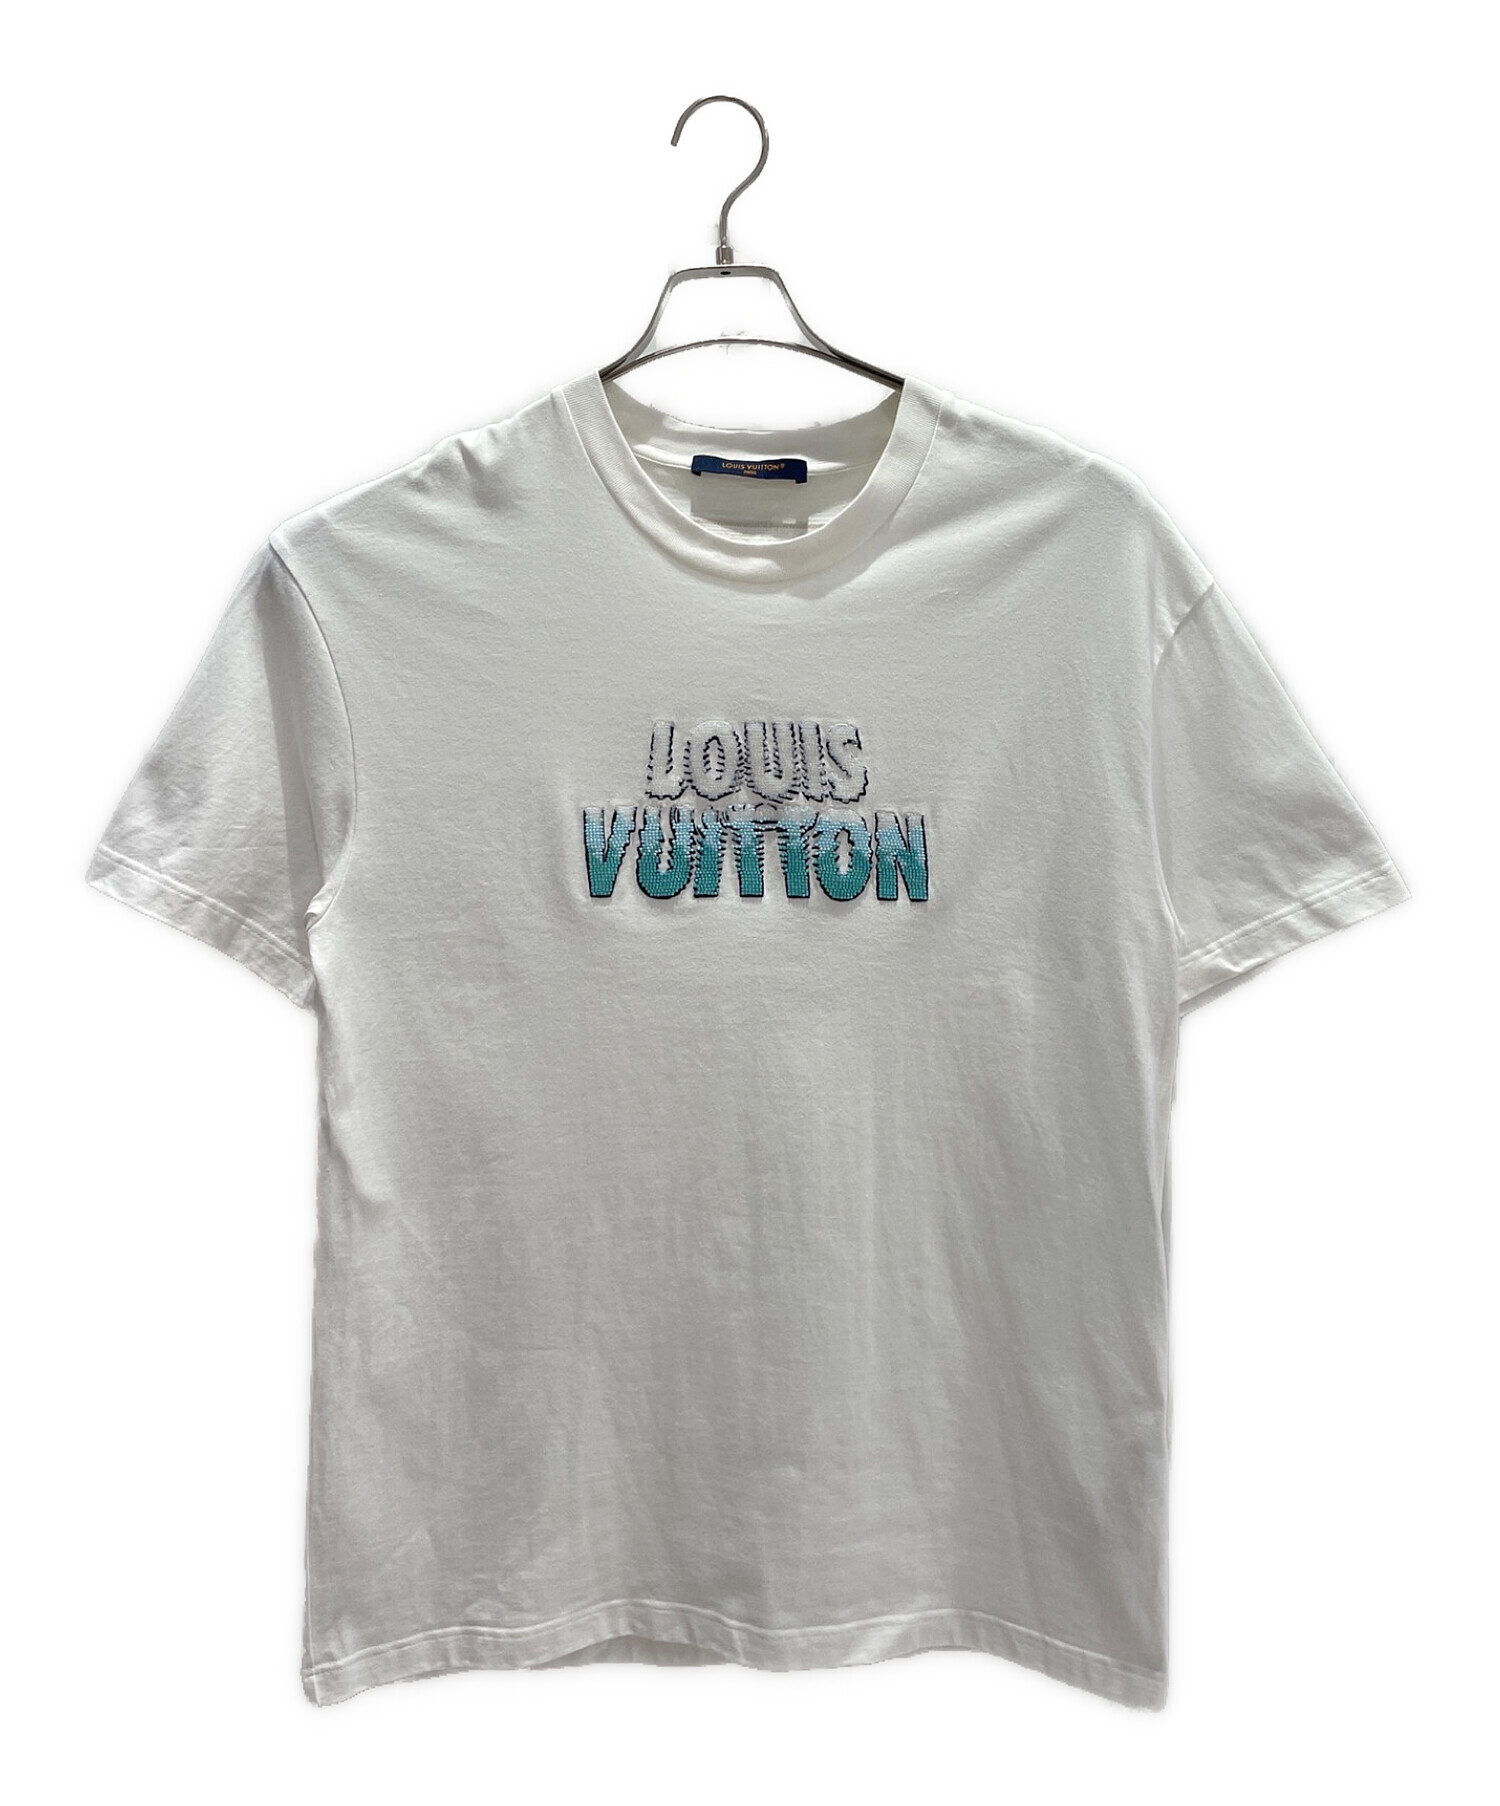 LOUIS VUITTON (ルイ ヴィトン) エンブロイダードビーズコットンクルーネック半袖Tシャツ ホワイト サイズ:M